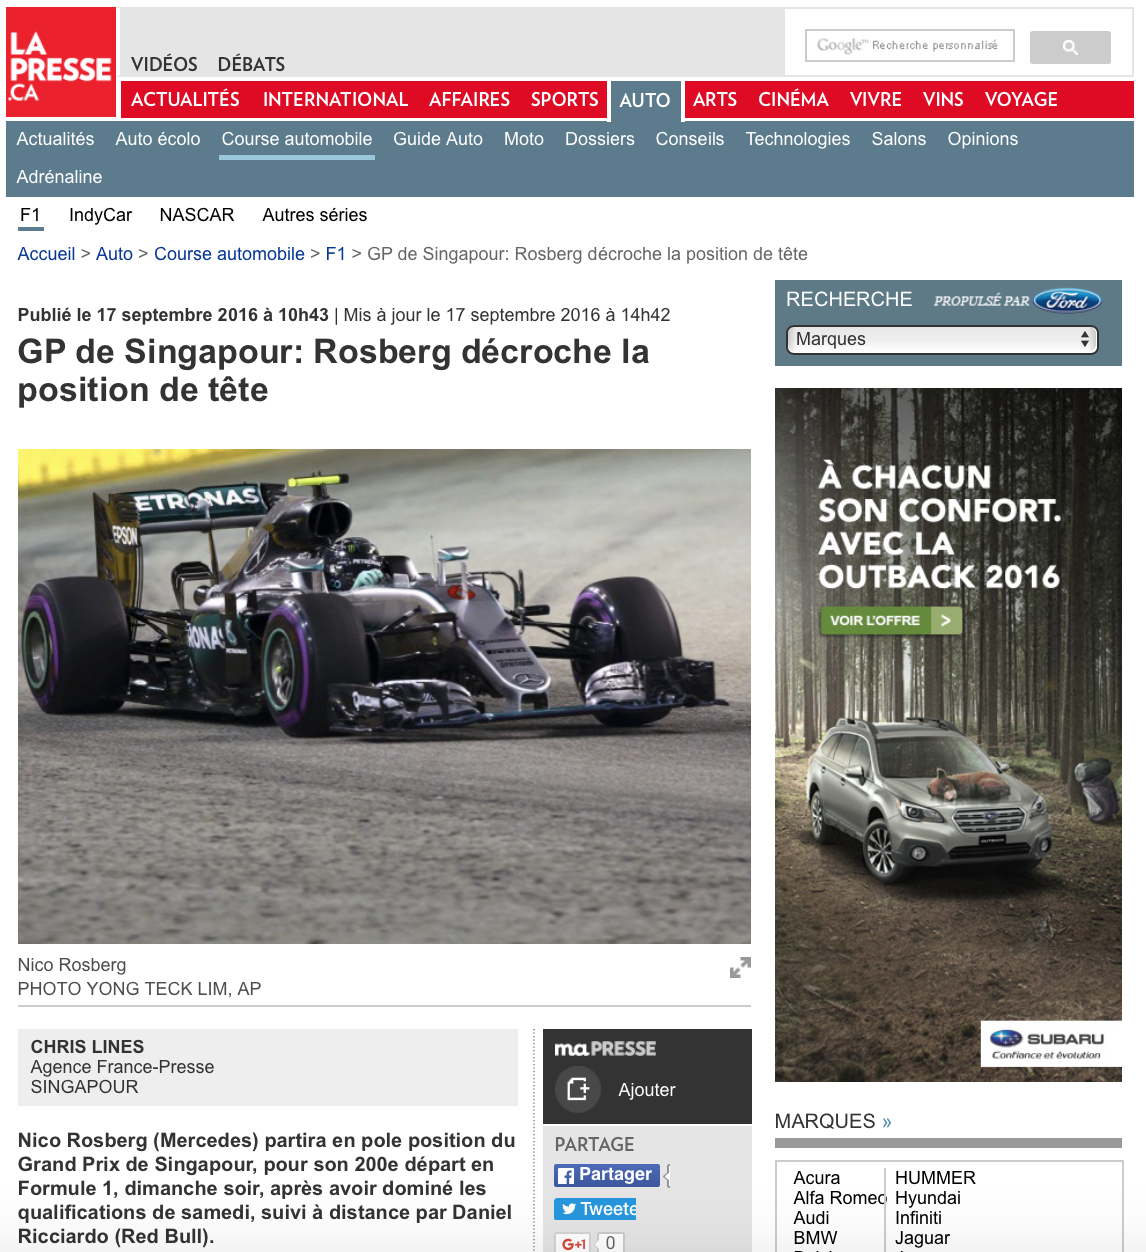  F1 Singapore Grand Prix for the Associated Press (www.apimages.com) 